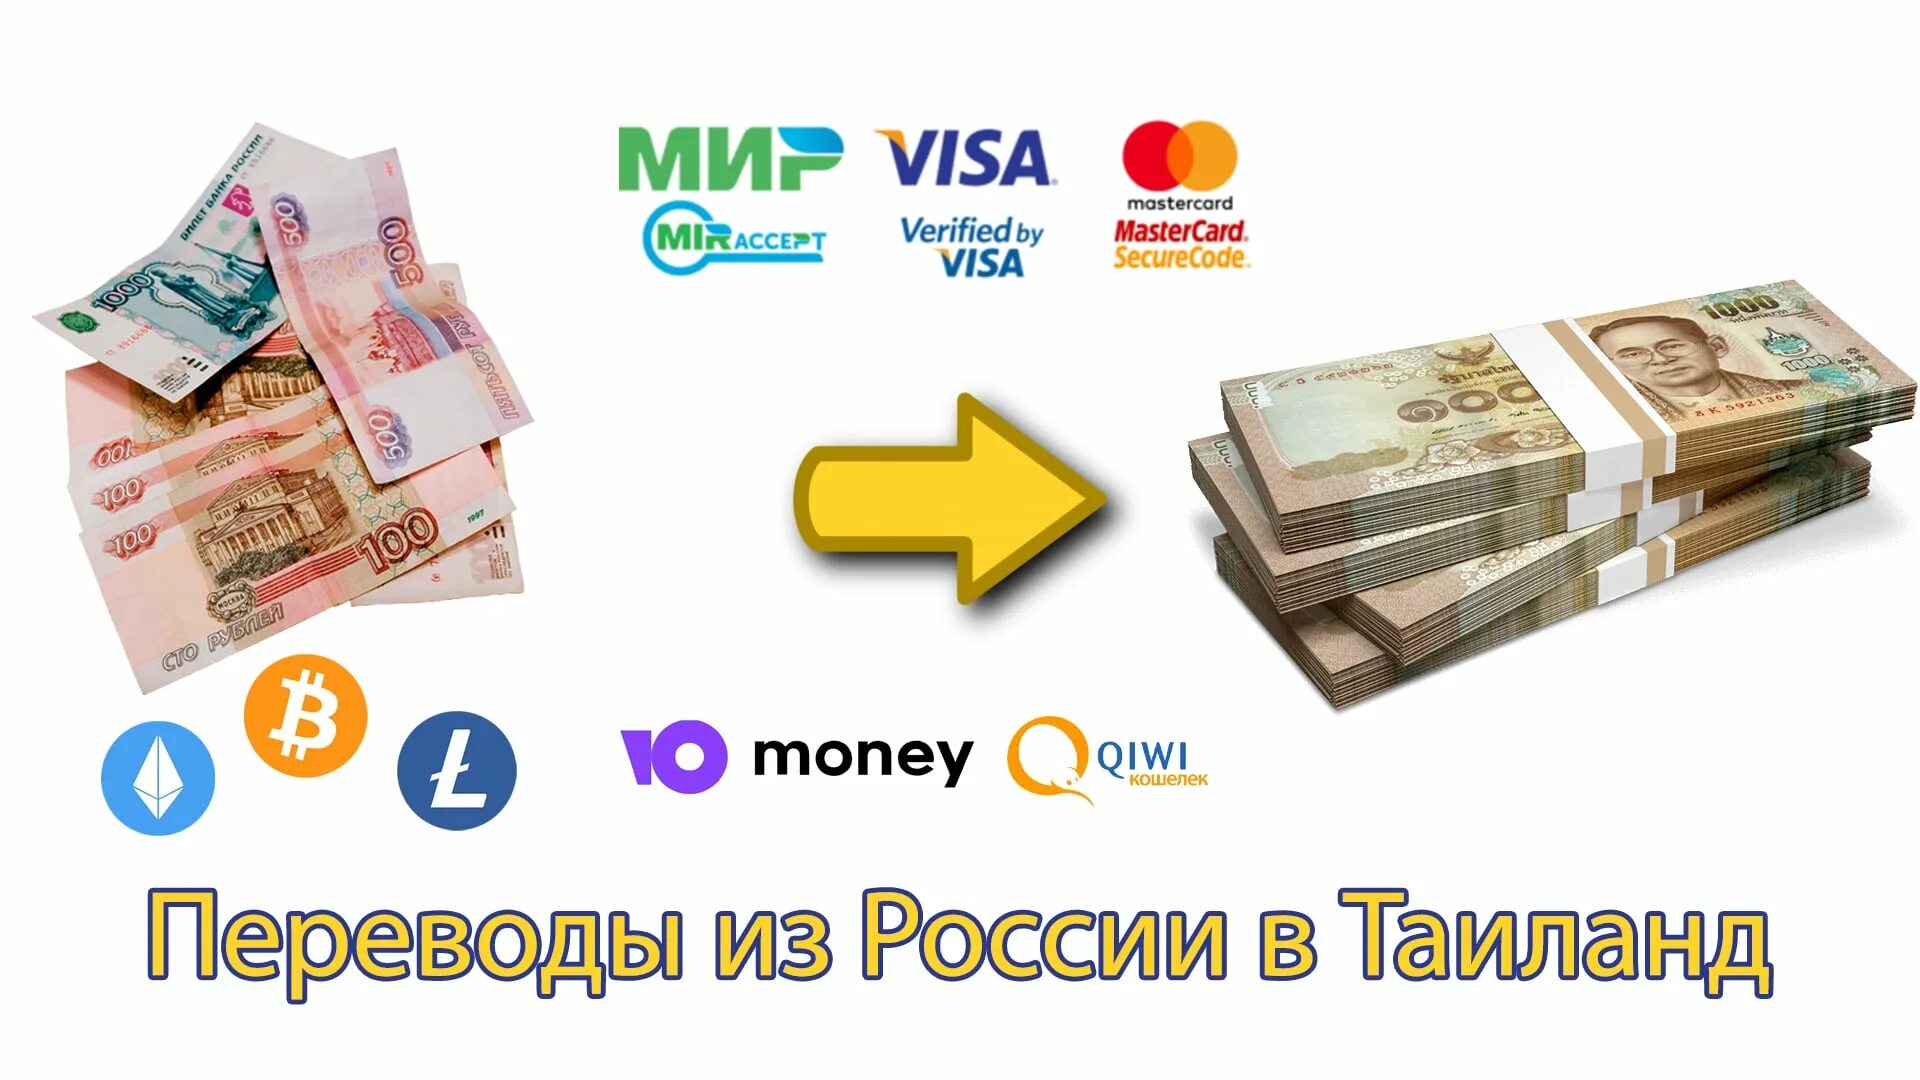 Где можно обменять российские рубли на белорусские. Обменять рубли на баты. Как обменять рубли на евро. Перевод казахстанских денег в рубли. Как можно обменять Беларусь деньги 2000.